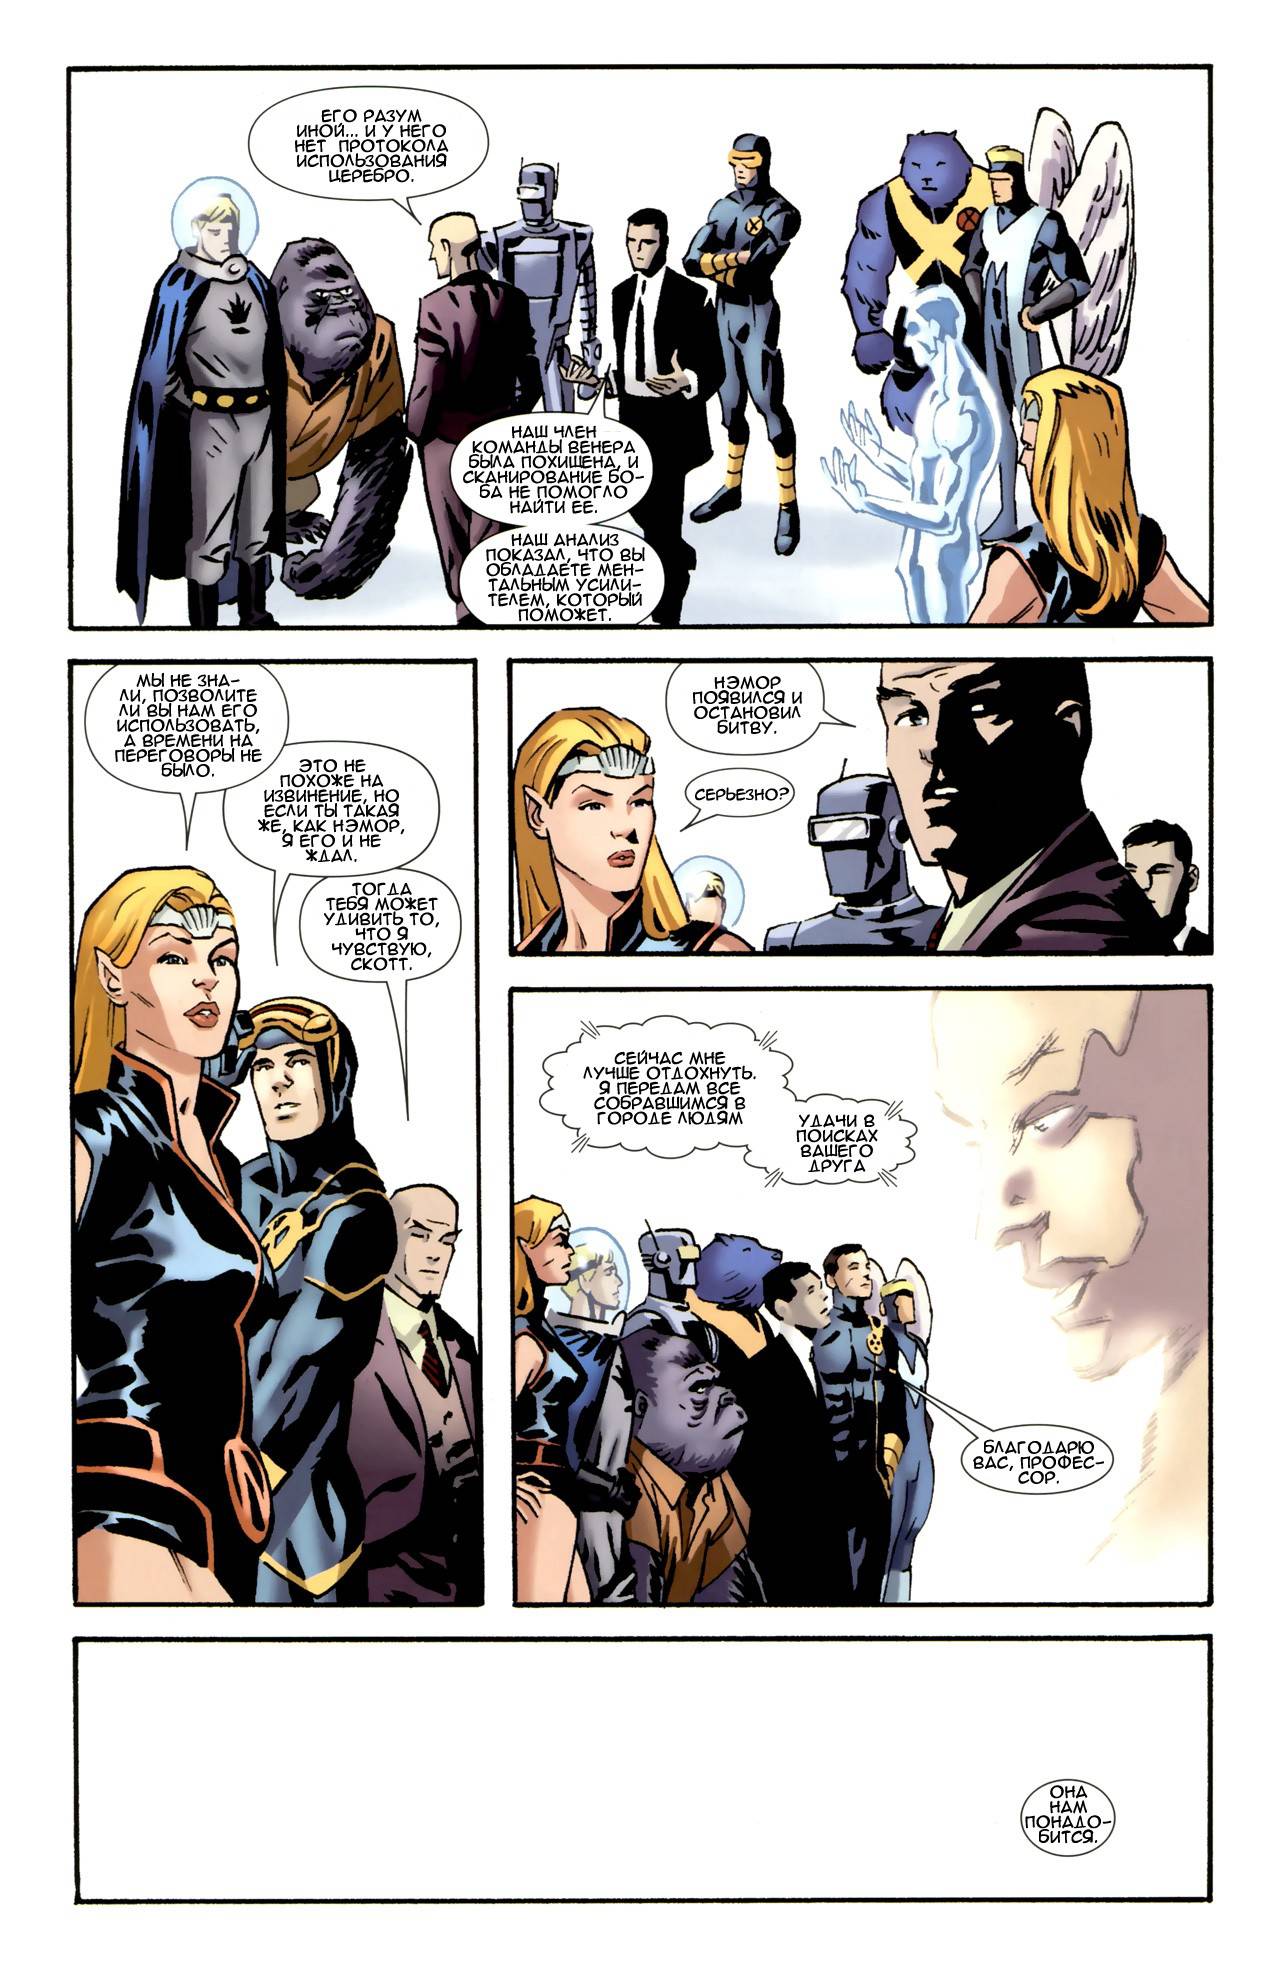 Люди-Икс против Агентов Атласа №2 (X-Men VS. Agents of Atlas #2) - страница 27 - читать комикс онлайн бесплатно | UniComics